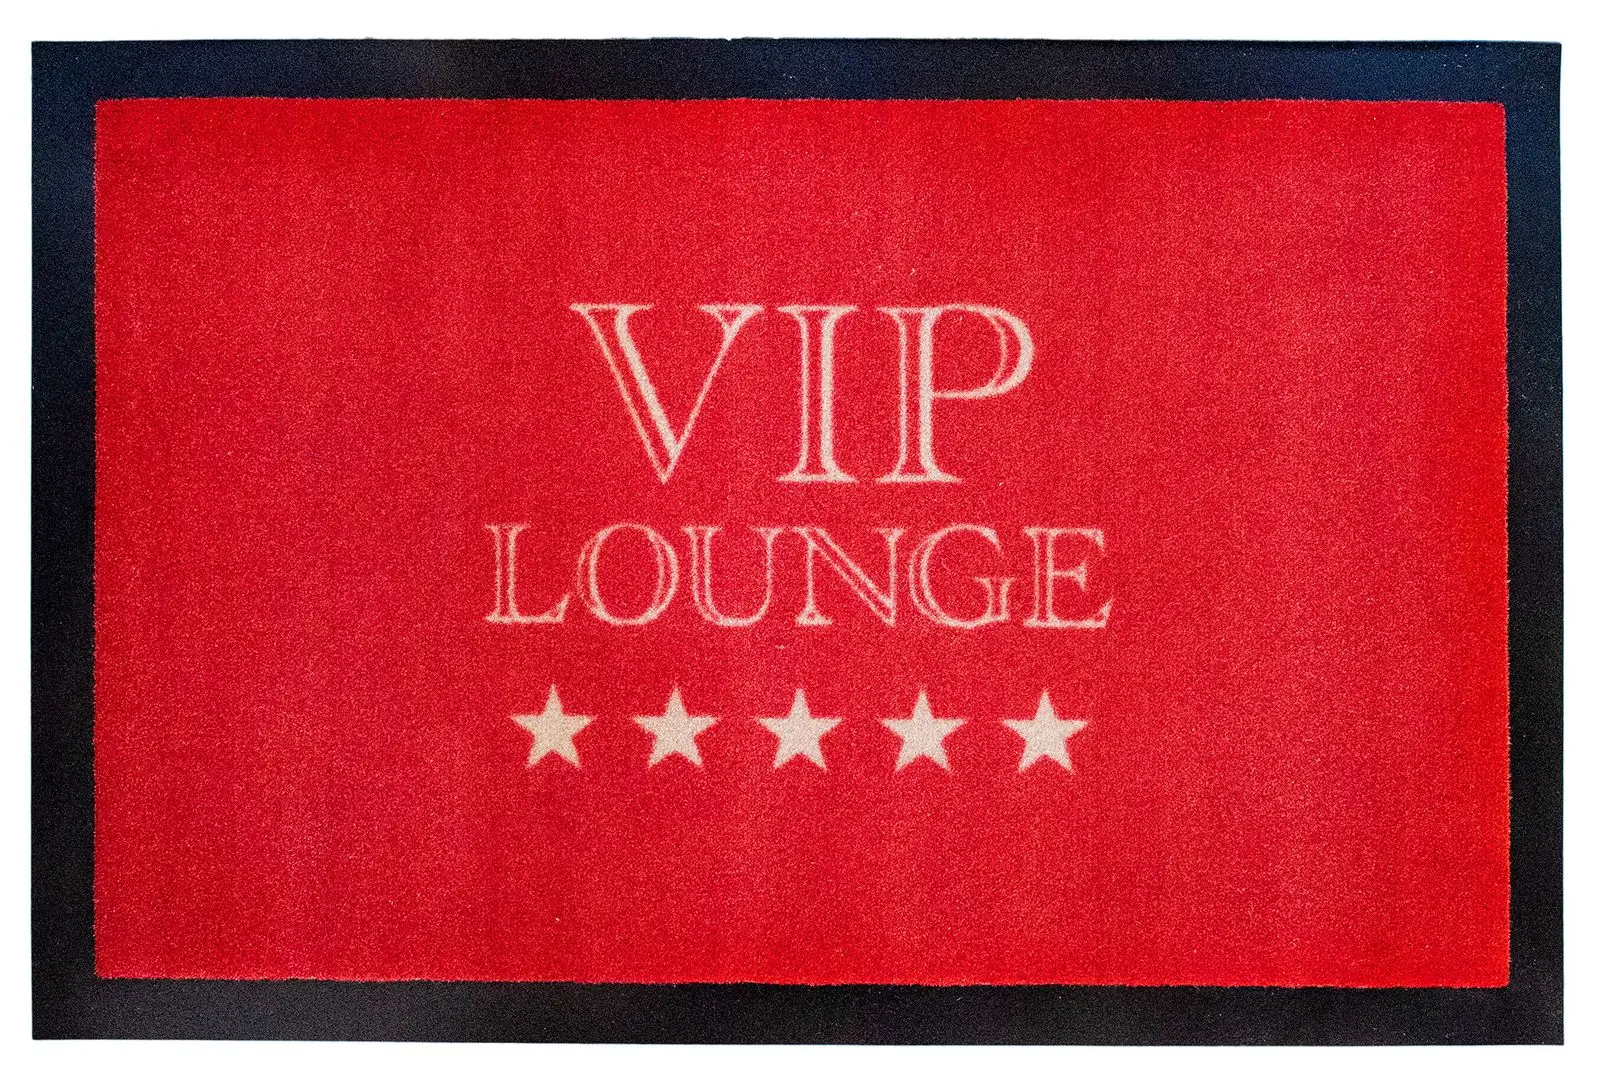 VIP T眉rmatte Lounge